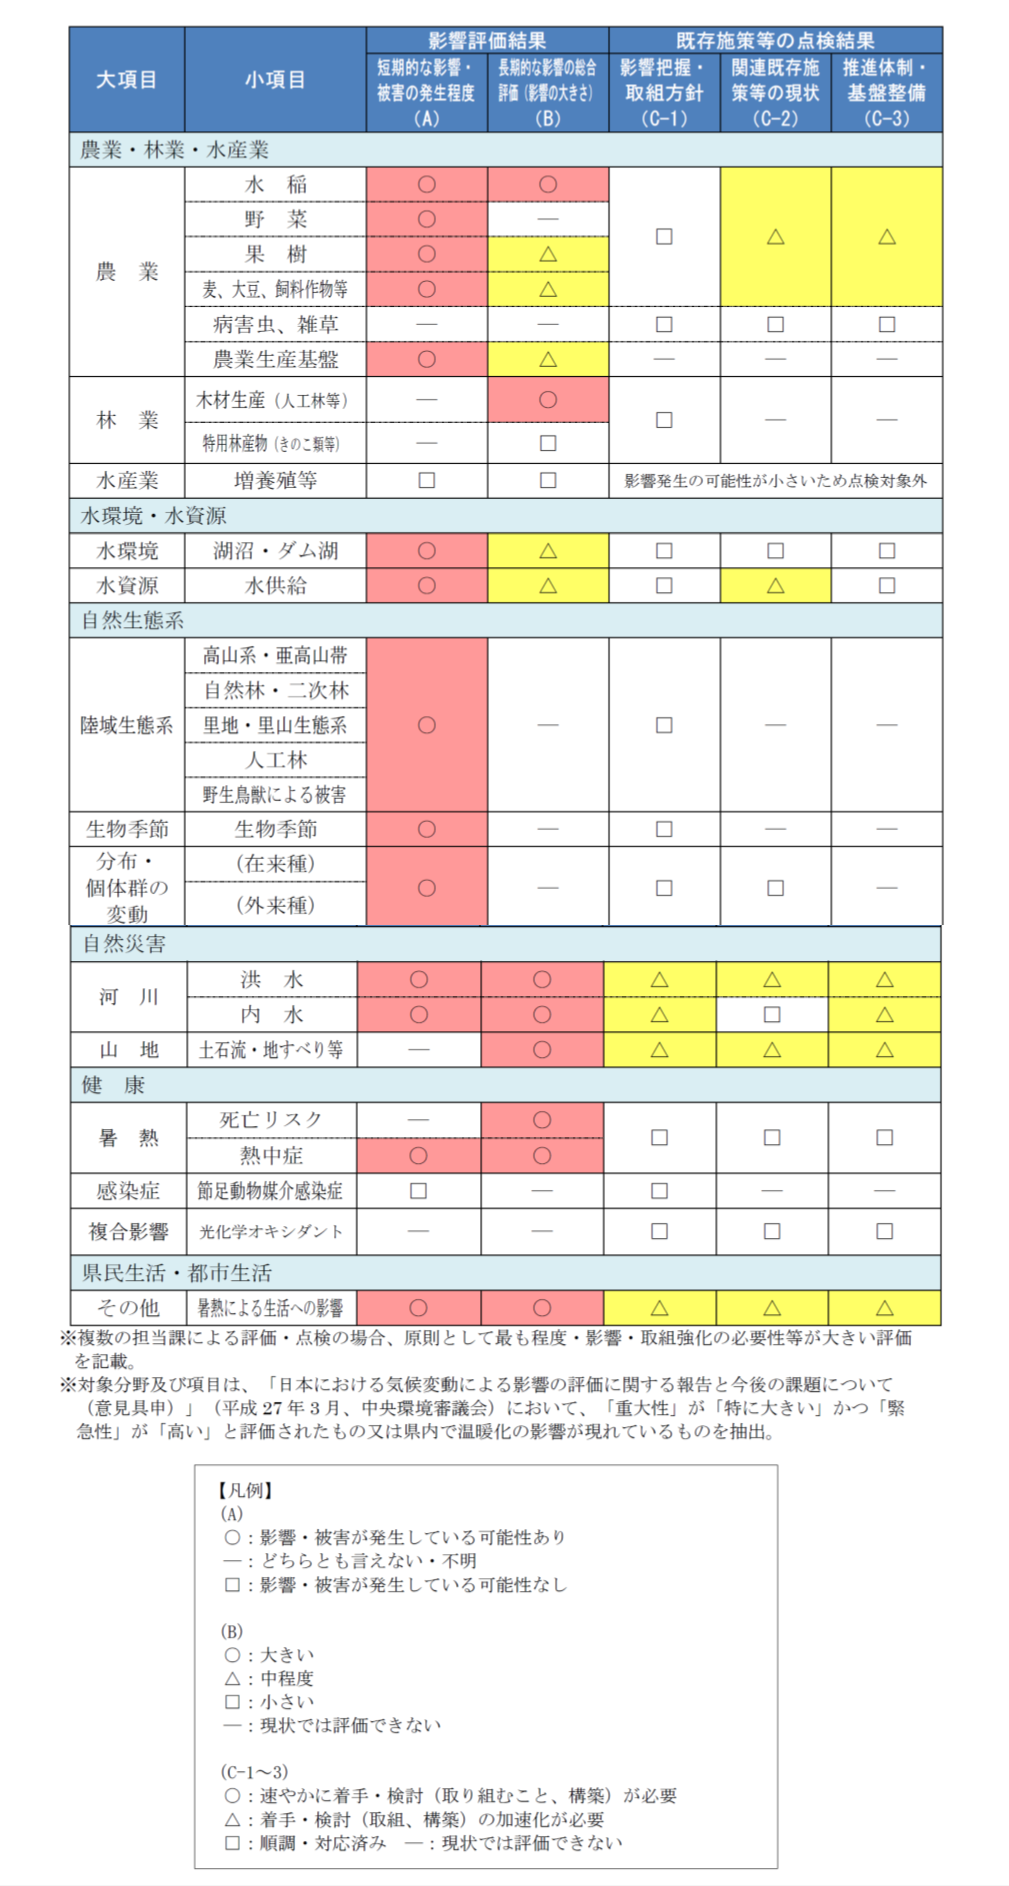 41　埼玉県における影響評価結果及び既存施策等の点検結果一覧